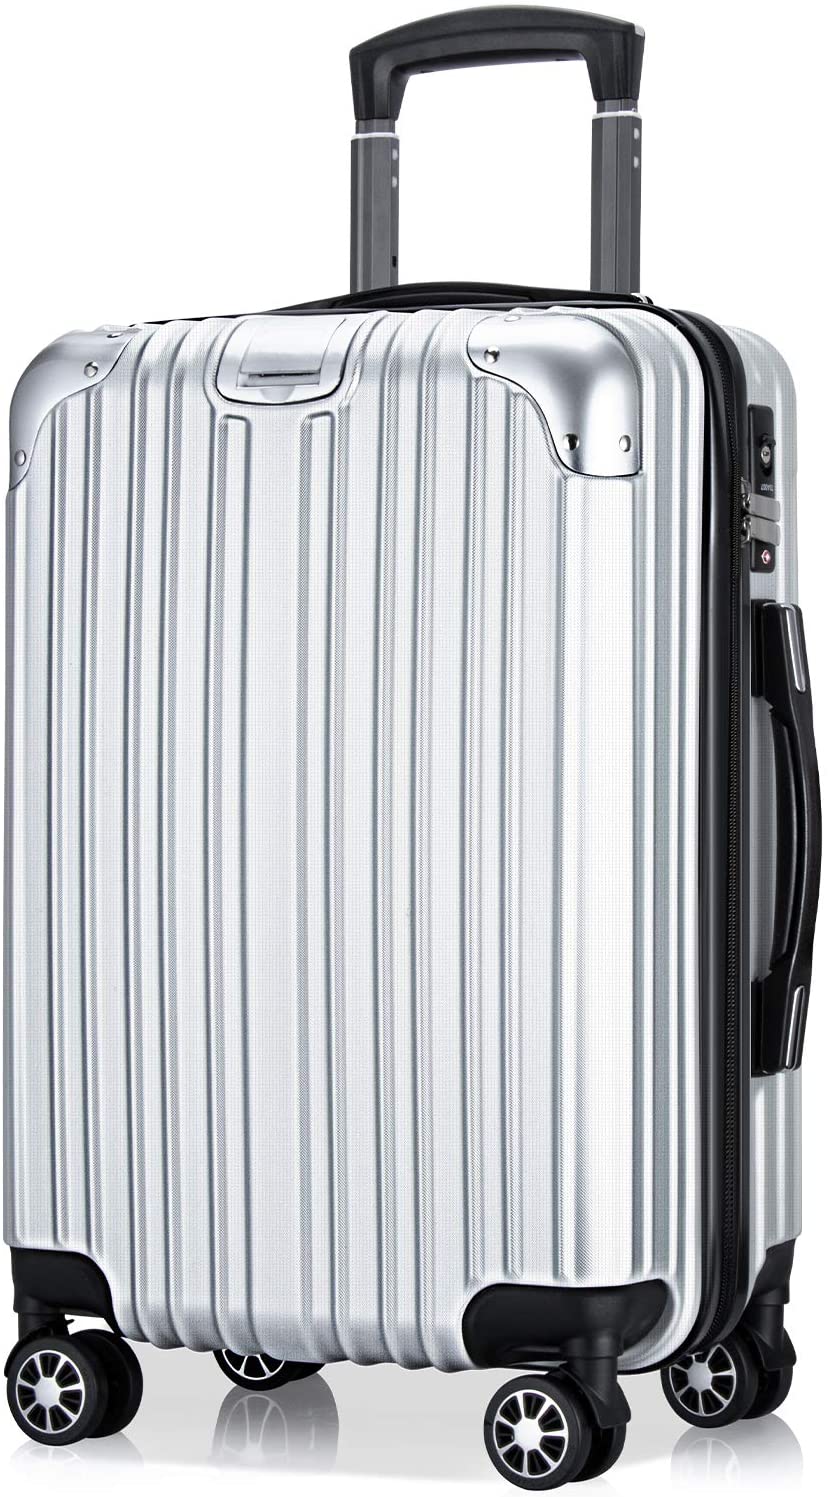 スーツケース L サイズ 98L キャリーバッグ キャリーケース 超軽量